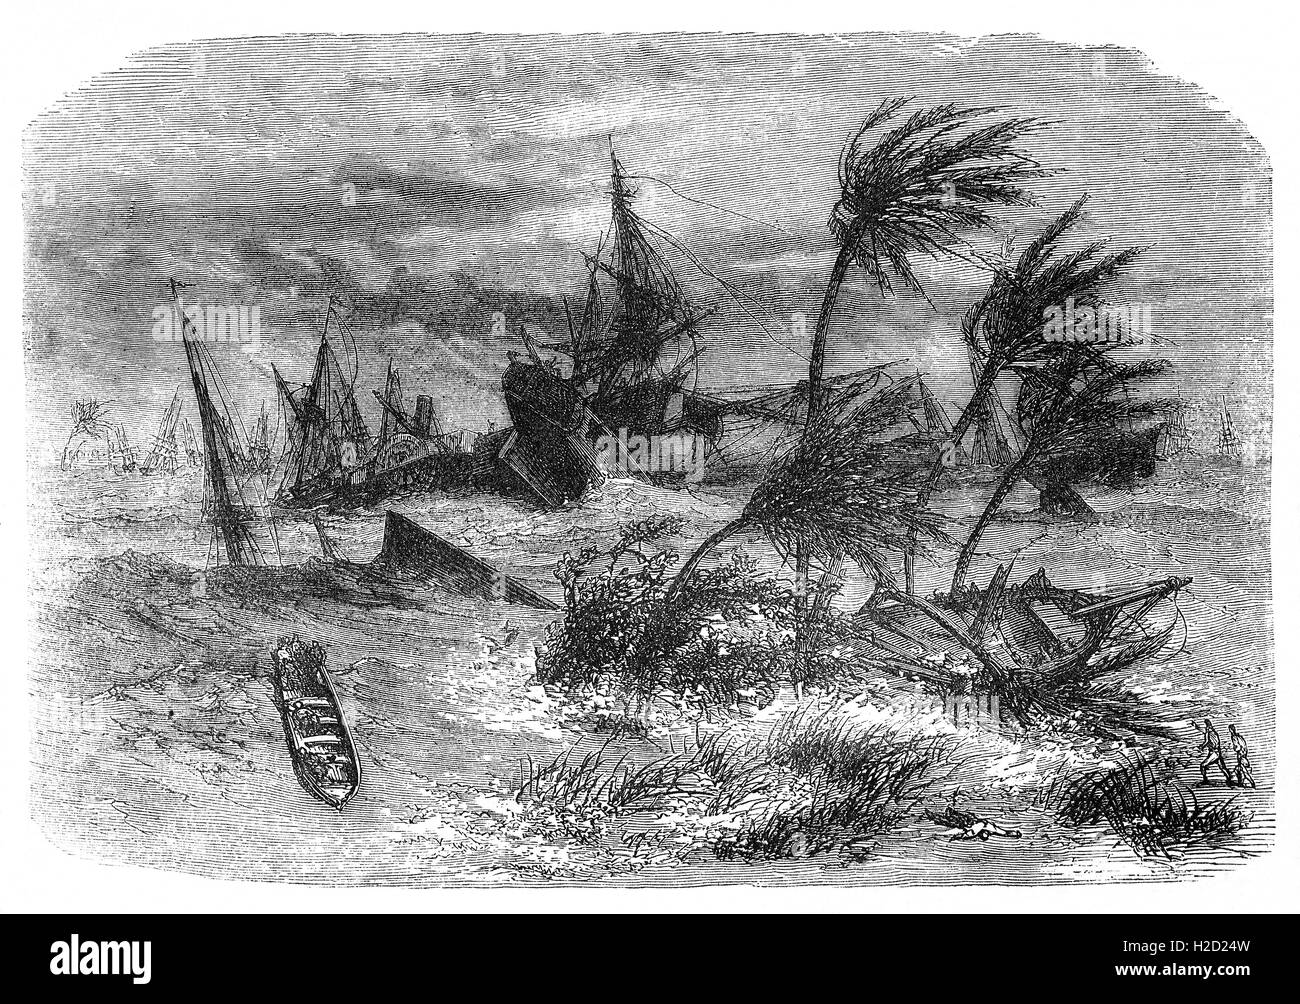 Am 5. Oktober 1864 ein mächtiger Zyklon traf in der Nähe von Kalkutta, Indien, rund 60.000 Menschen getötet.  Über 100 Ziegel Häuser und Zehntausende von gefliest und Stroh Hütten wurden dem Erdboden gleichgemacht. Der Schiffe im Hafen, 172 von 195, waren entweder beschädigt oder zerstört. Stockfoto